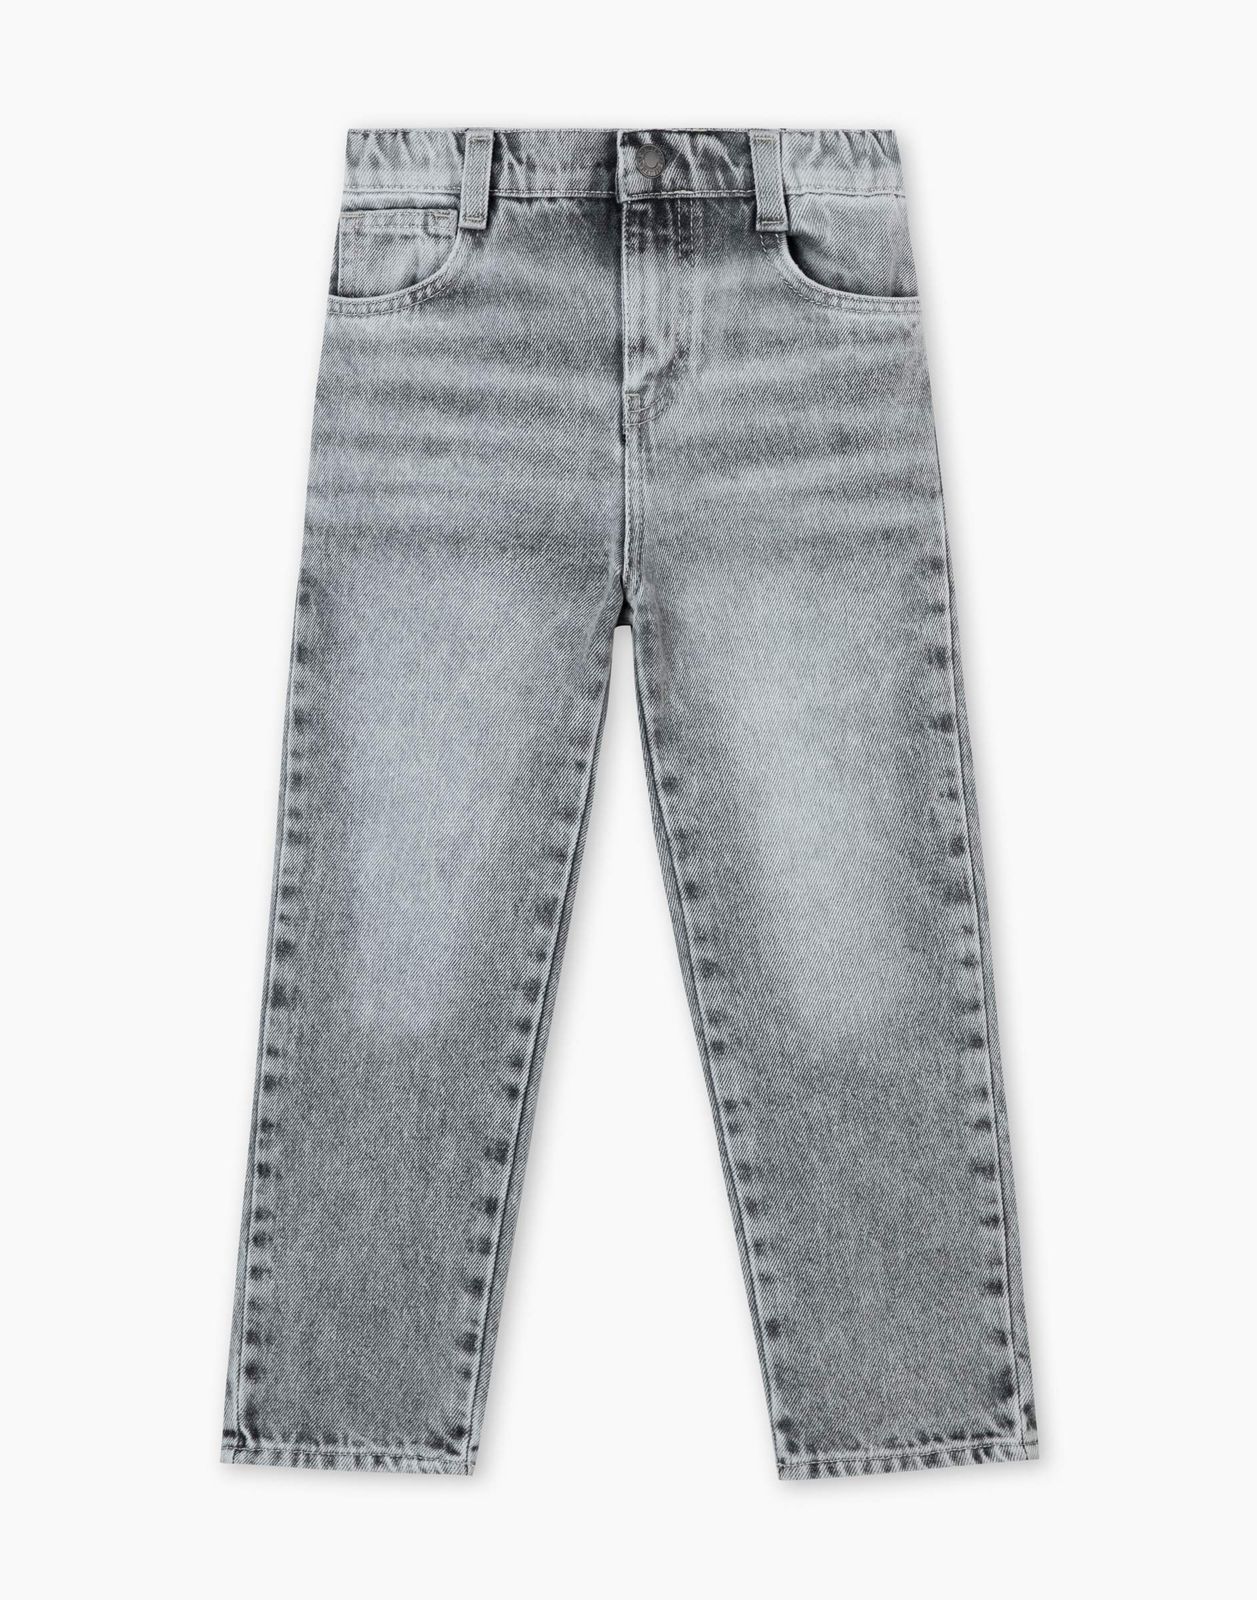 Джинсы детские Gloria Jeans BJN015300, серый/серый-лайтайс/, 98